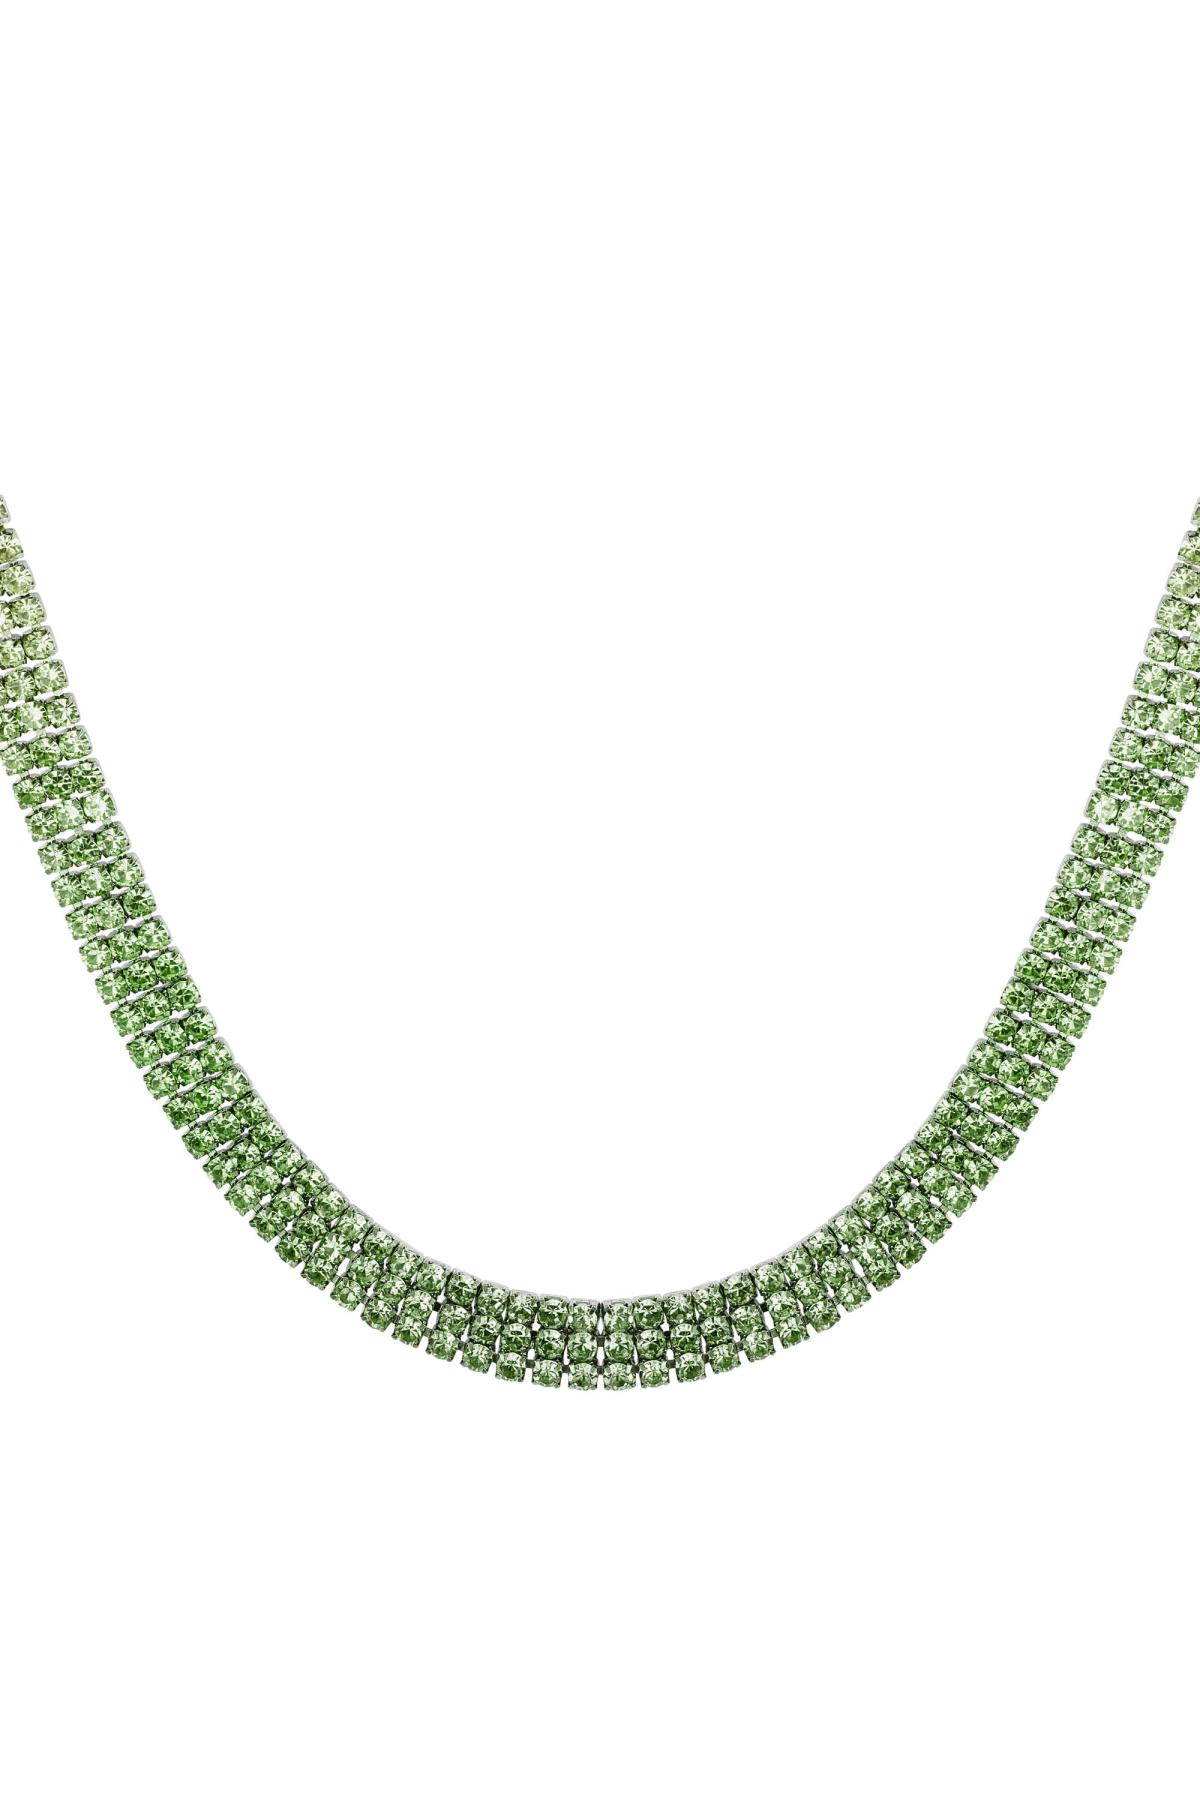 Halskette mit festlichen Strasssteinen - Holiday essentials Grün & Silber Kupfer h5 